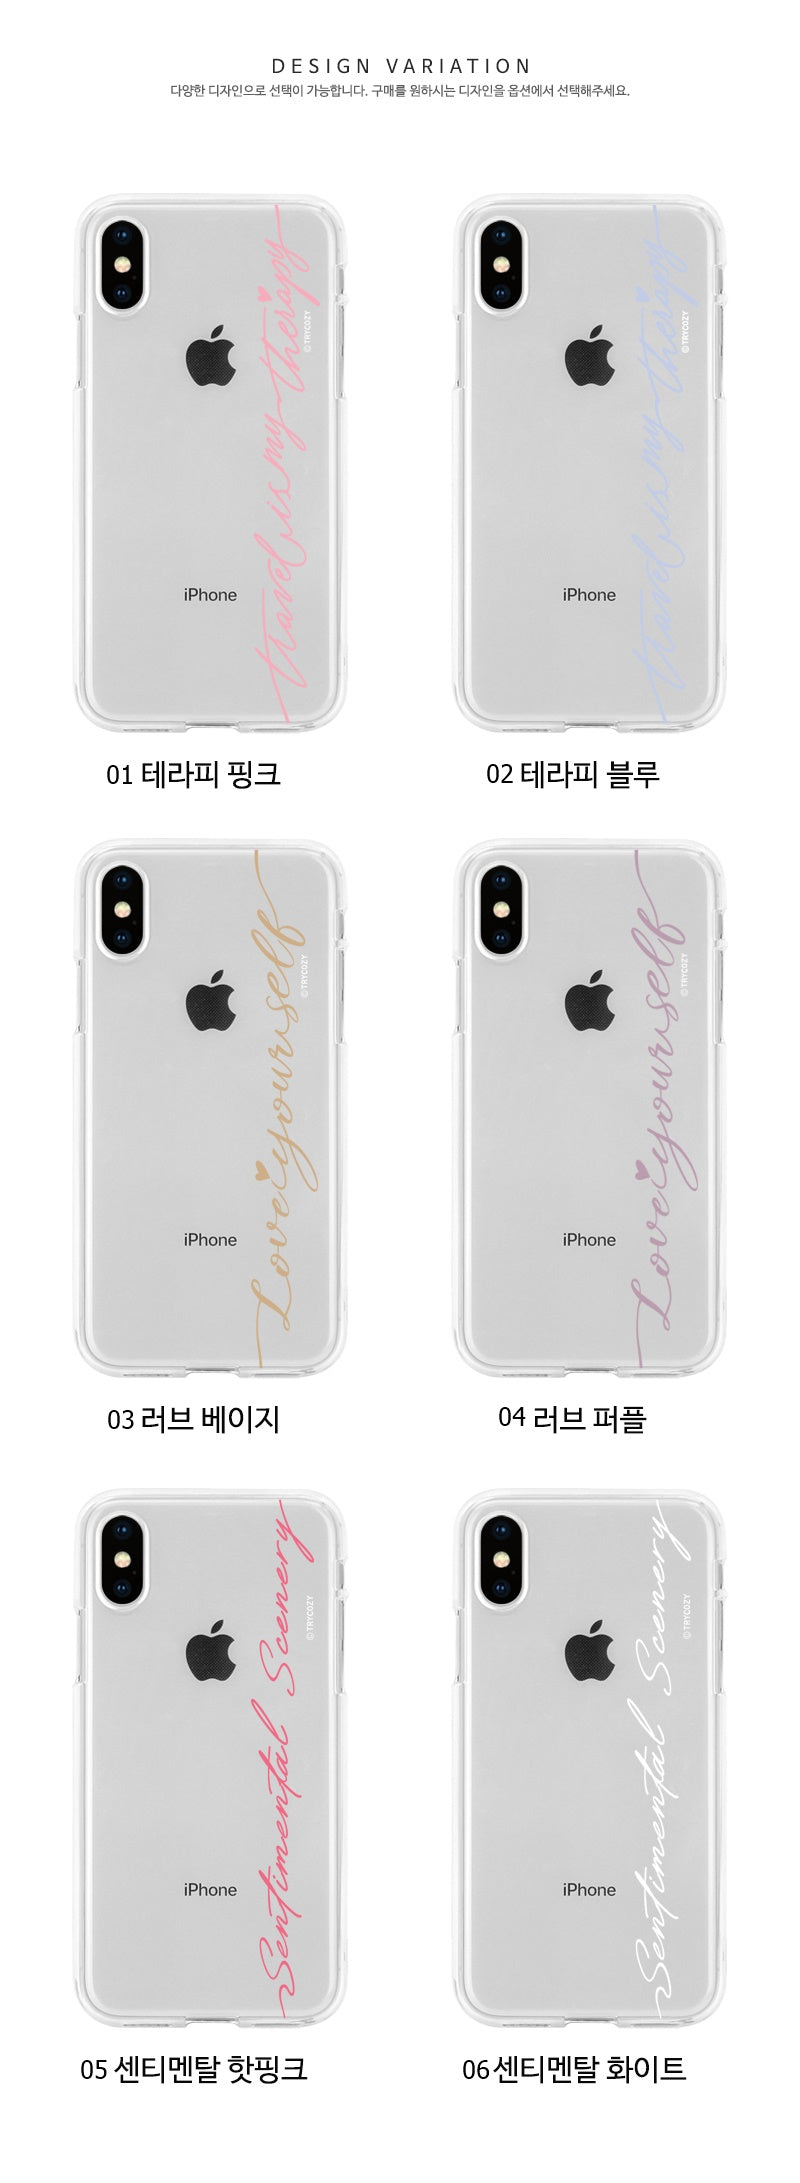 韓國直送 | J07 簡・色系字體 - 透明手機軟殼 iPhone / Samsung Galaxy 系列